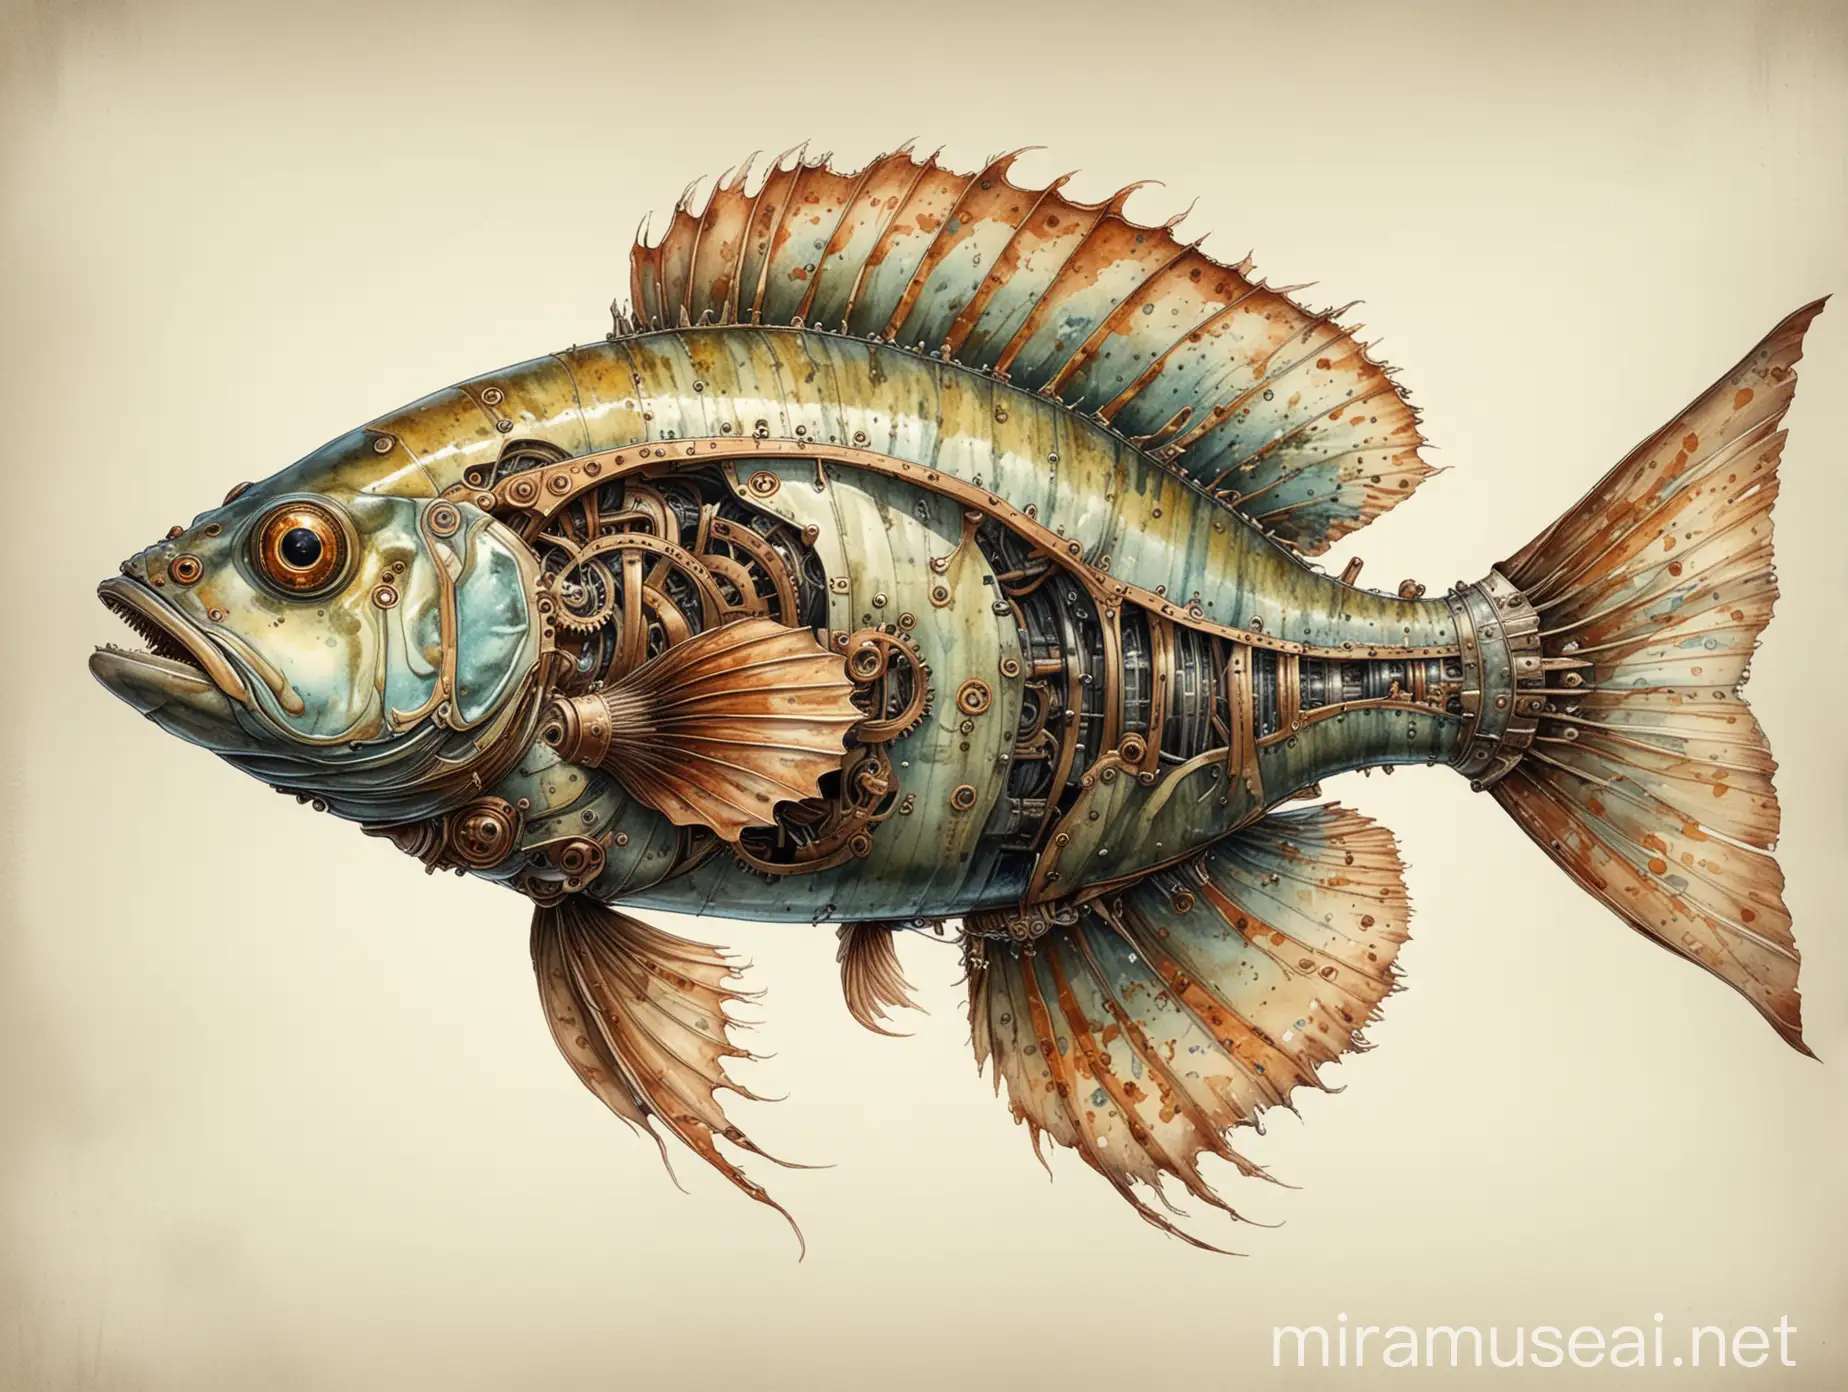 Imagine un dessin technique précis d'un poisson carnassier, steampunk, avec tous les détails anatomiques soigneusement rendus; avec de belles ombres, style aquarelle